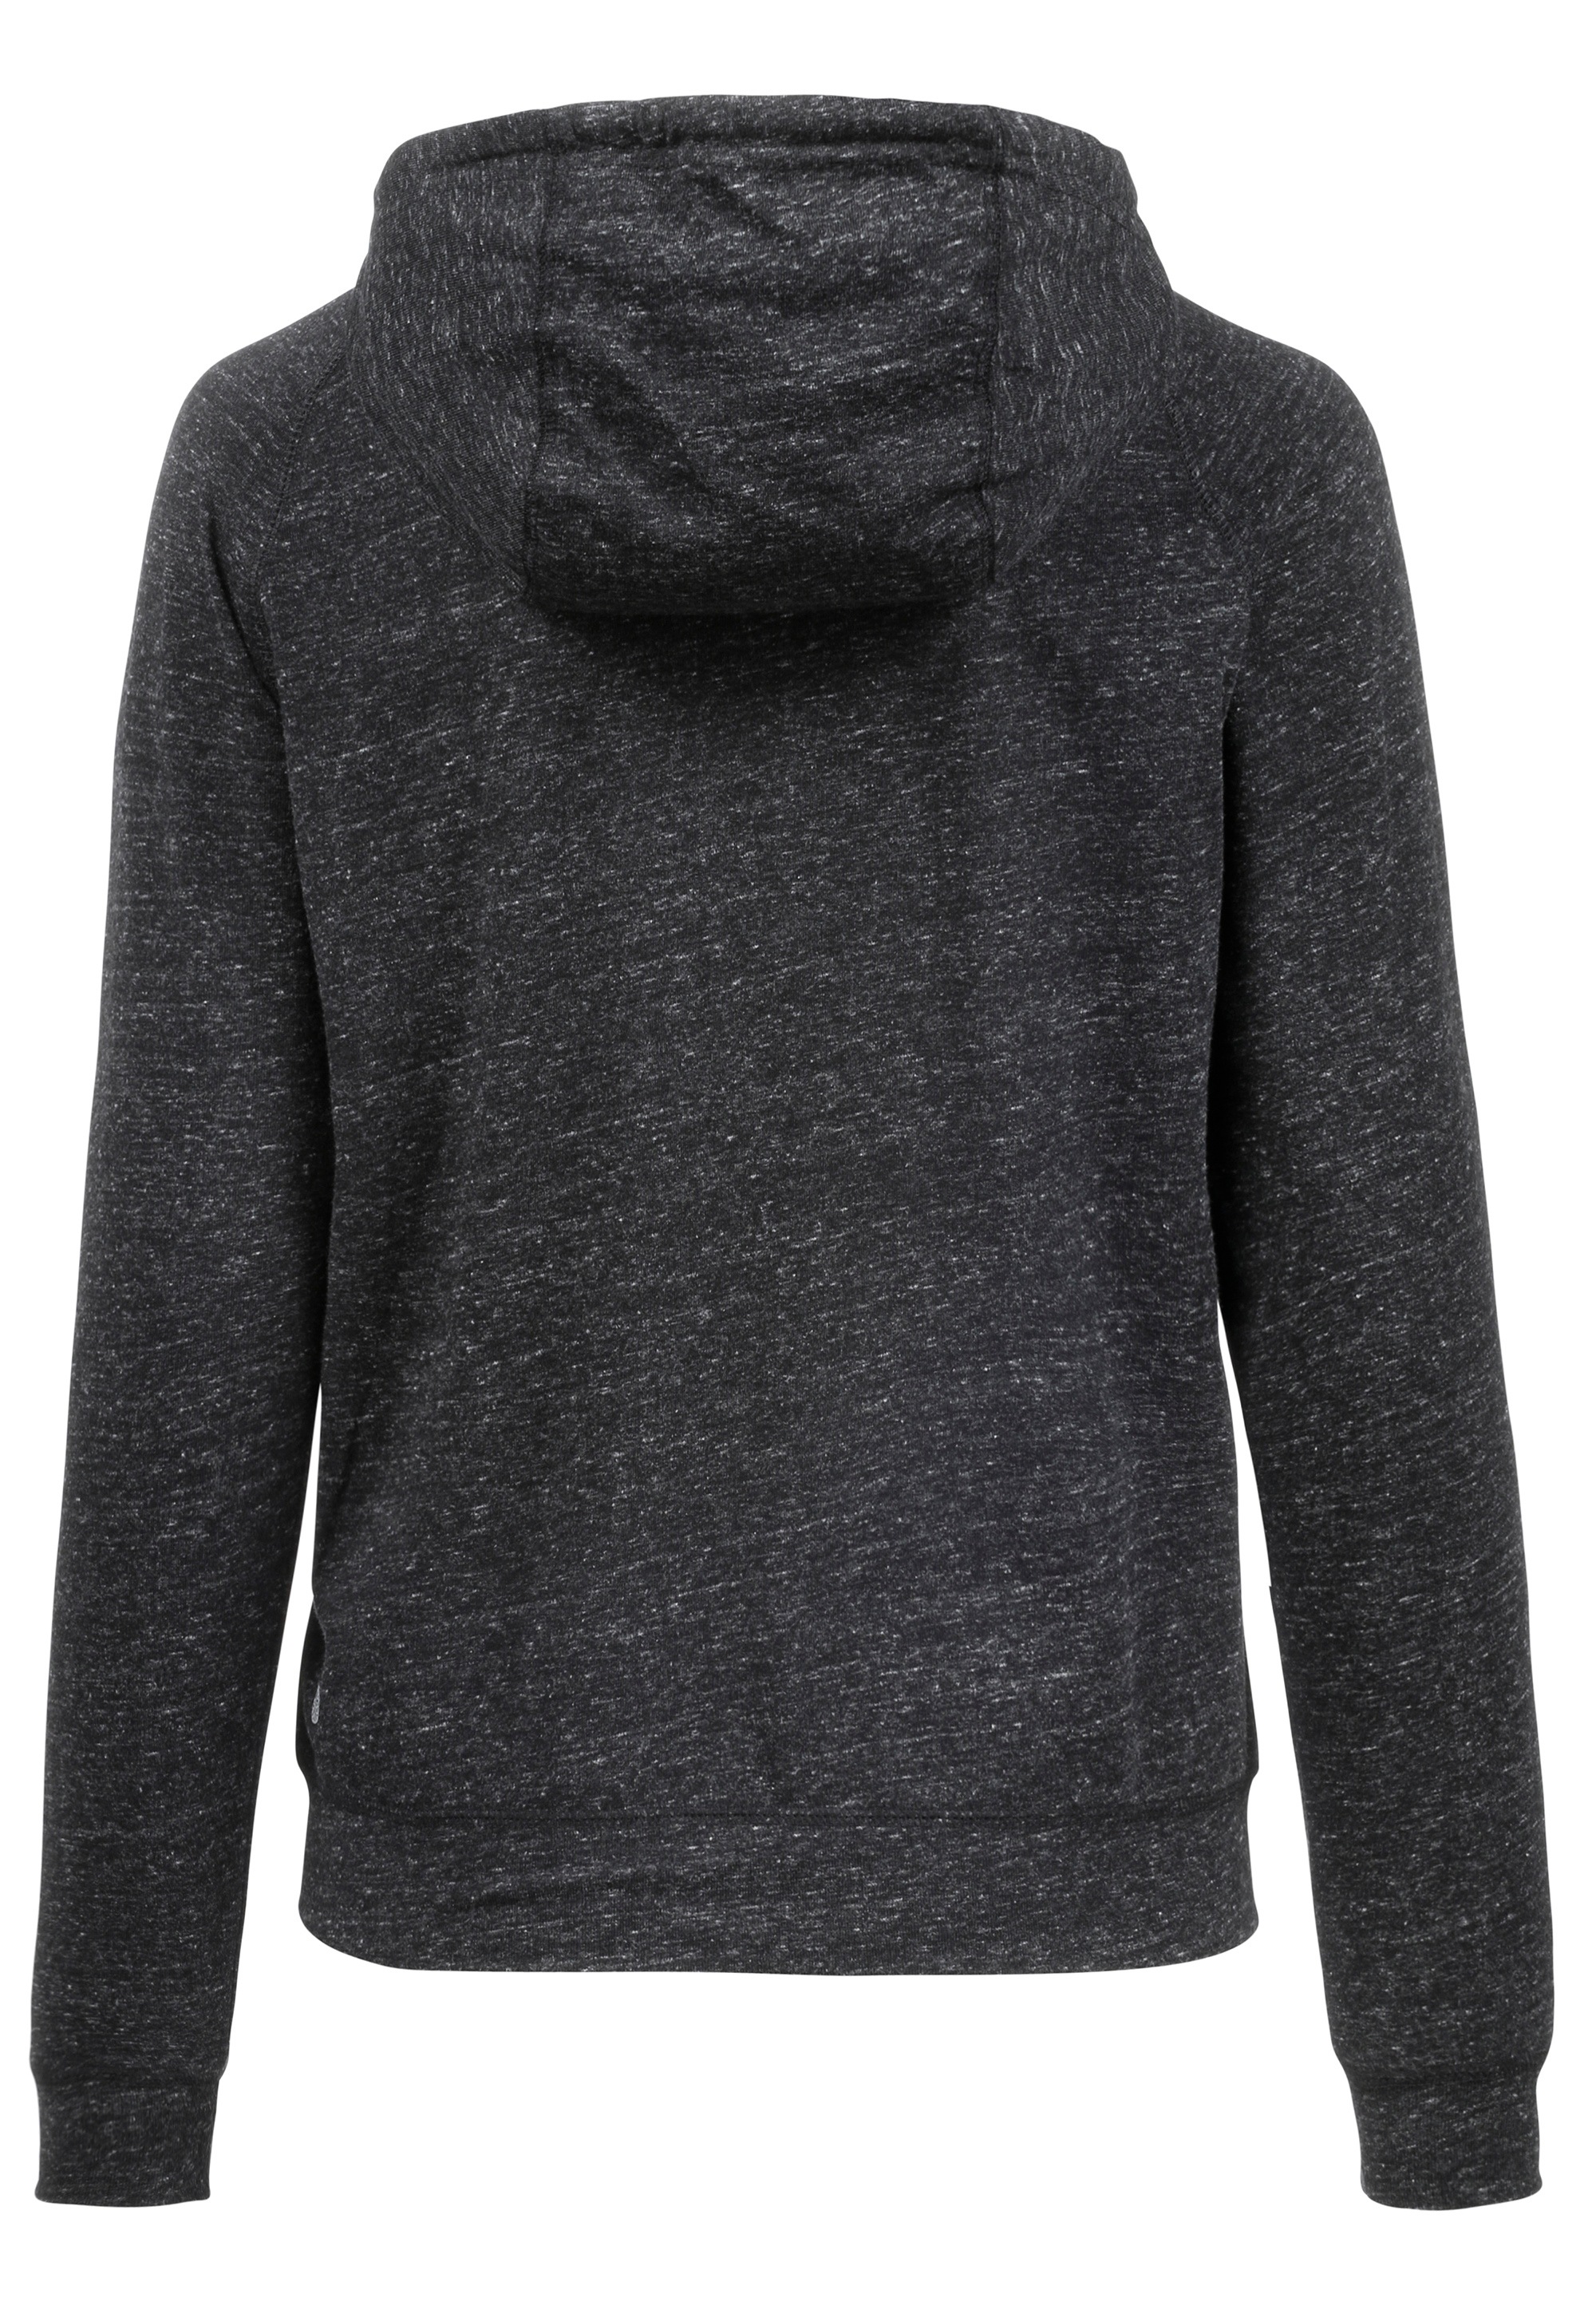 ATHLECIA Sweatshirt »Coroglen«, mit hohem Baumwoll-Anteil